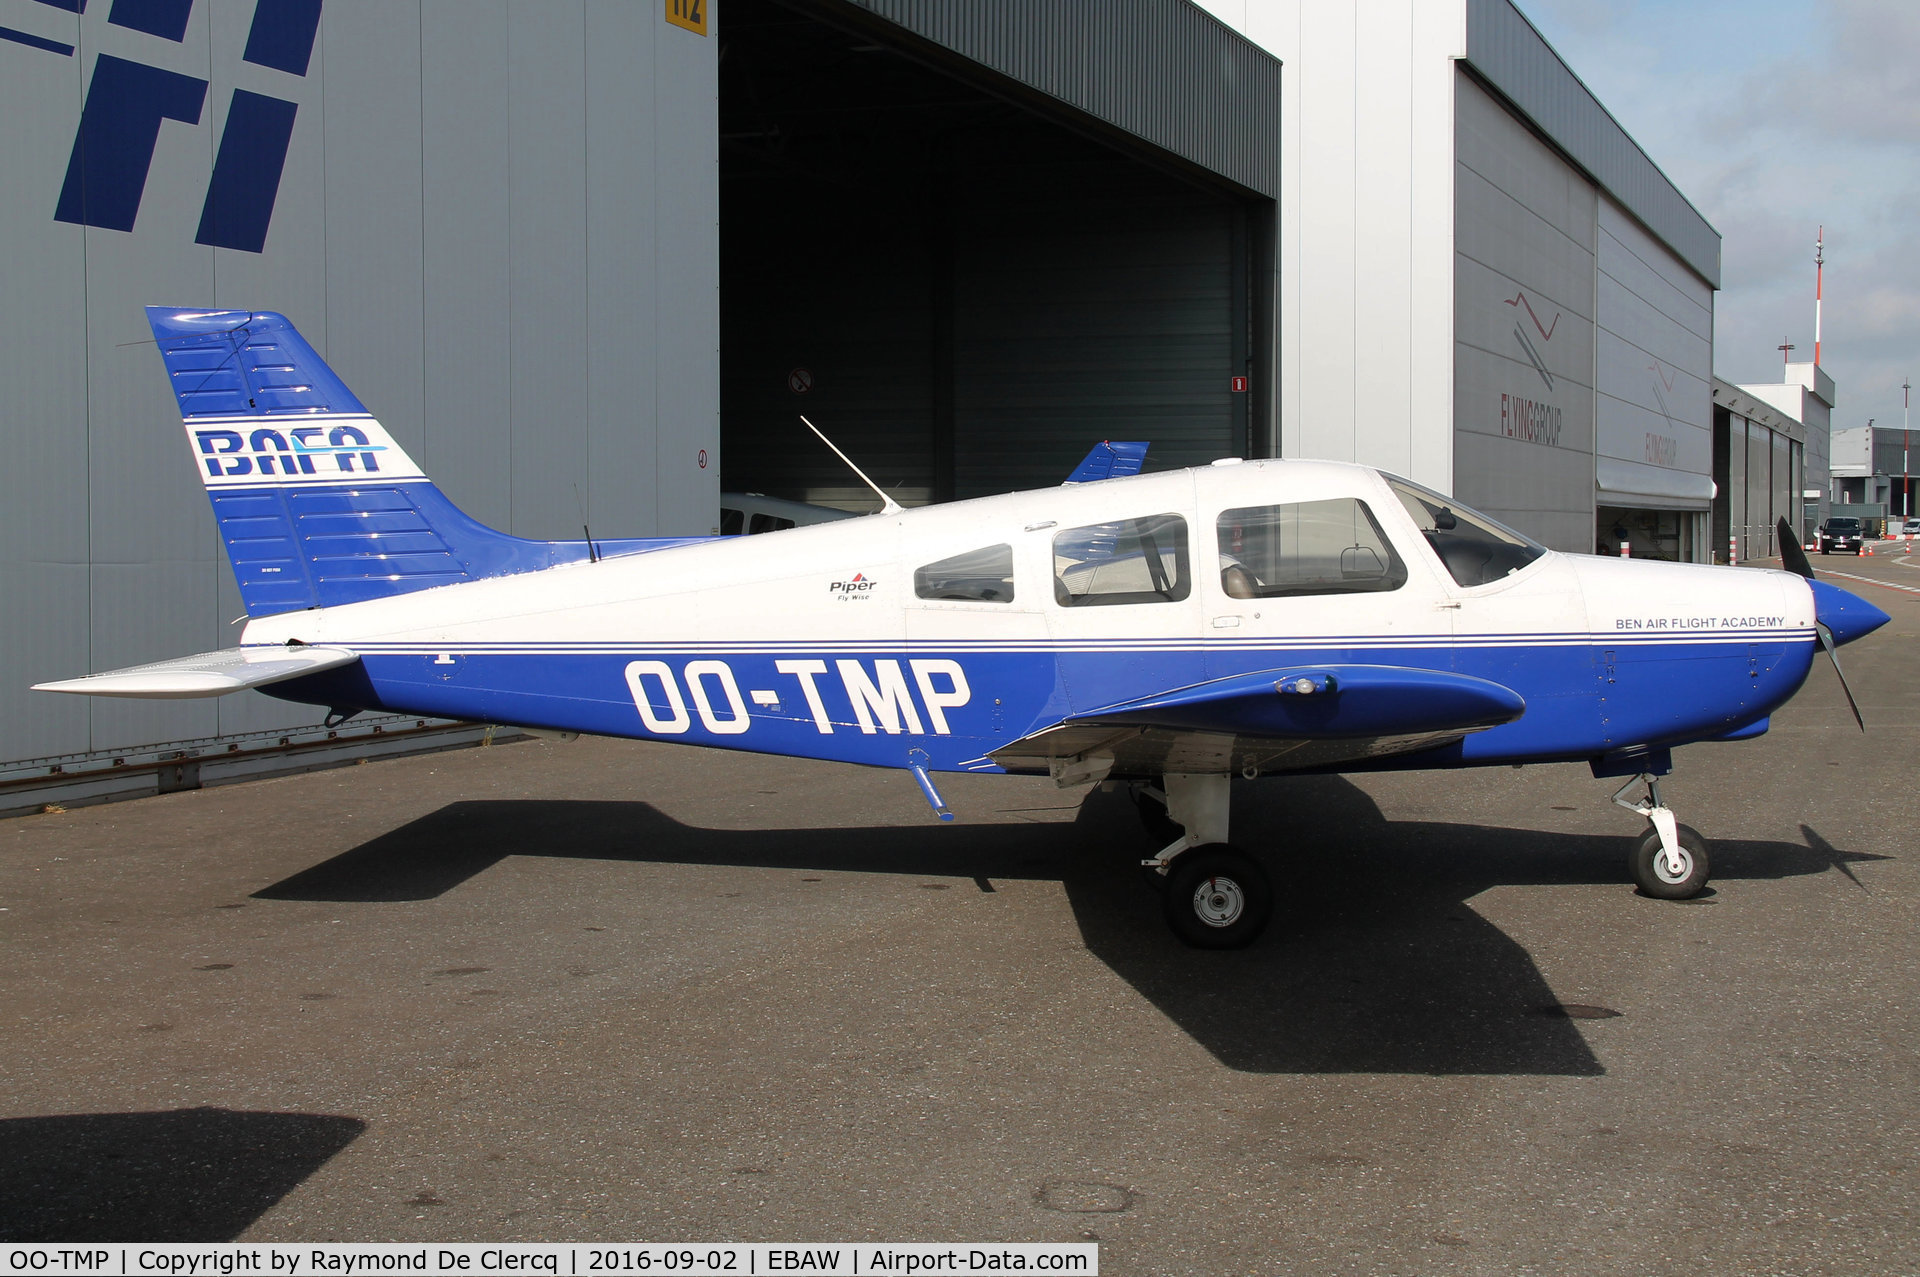 OO-TMP, 2008 Piper PA-28-161 C/N 2842313, In front of the BAFA hangar at Antwerp Airport.